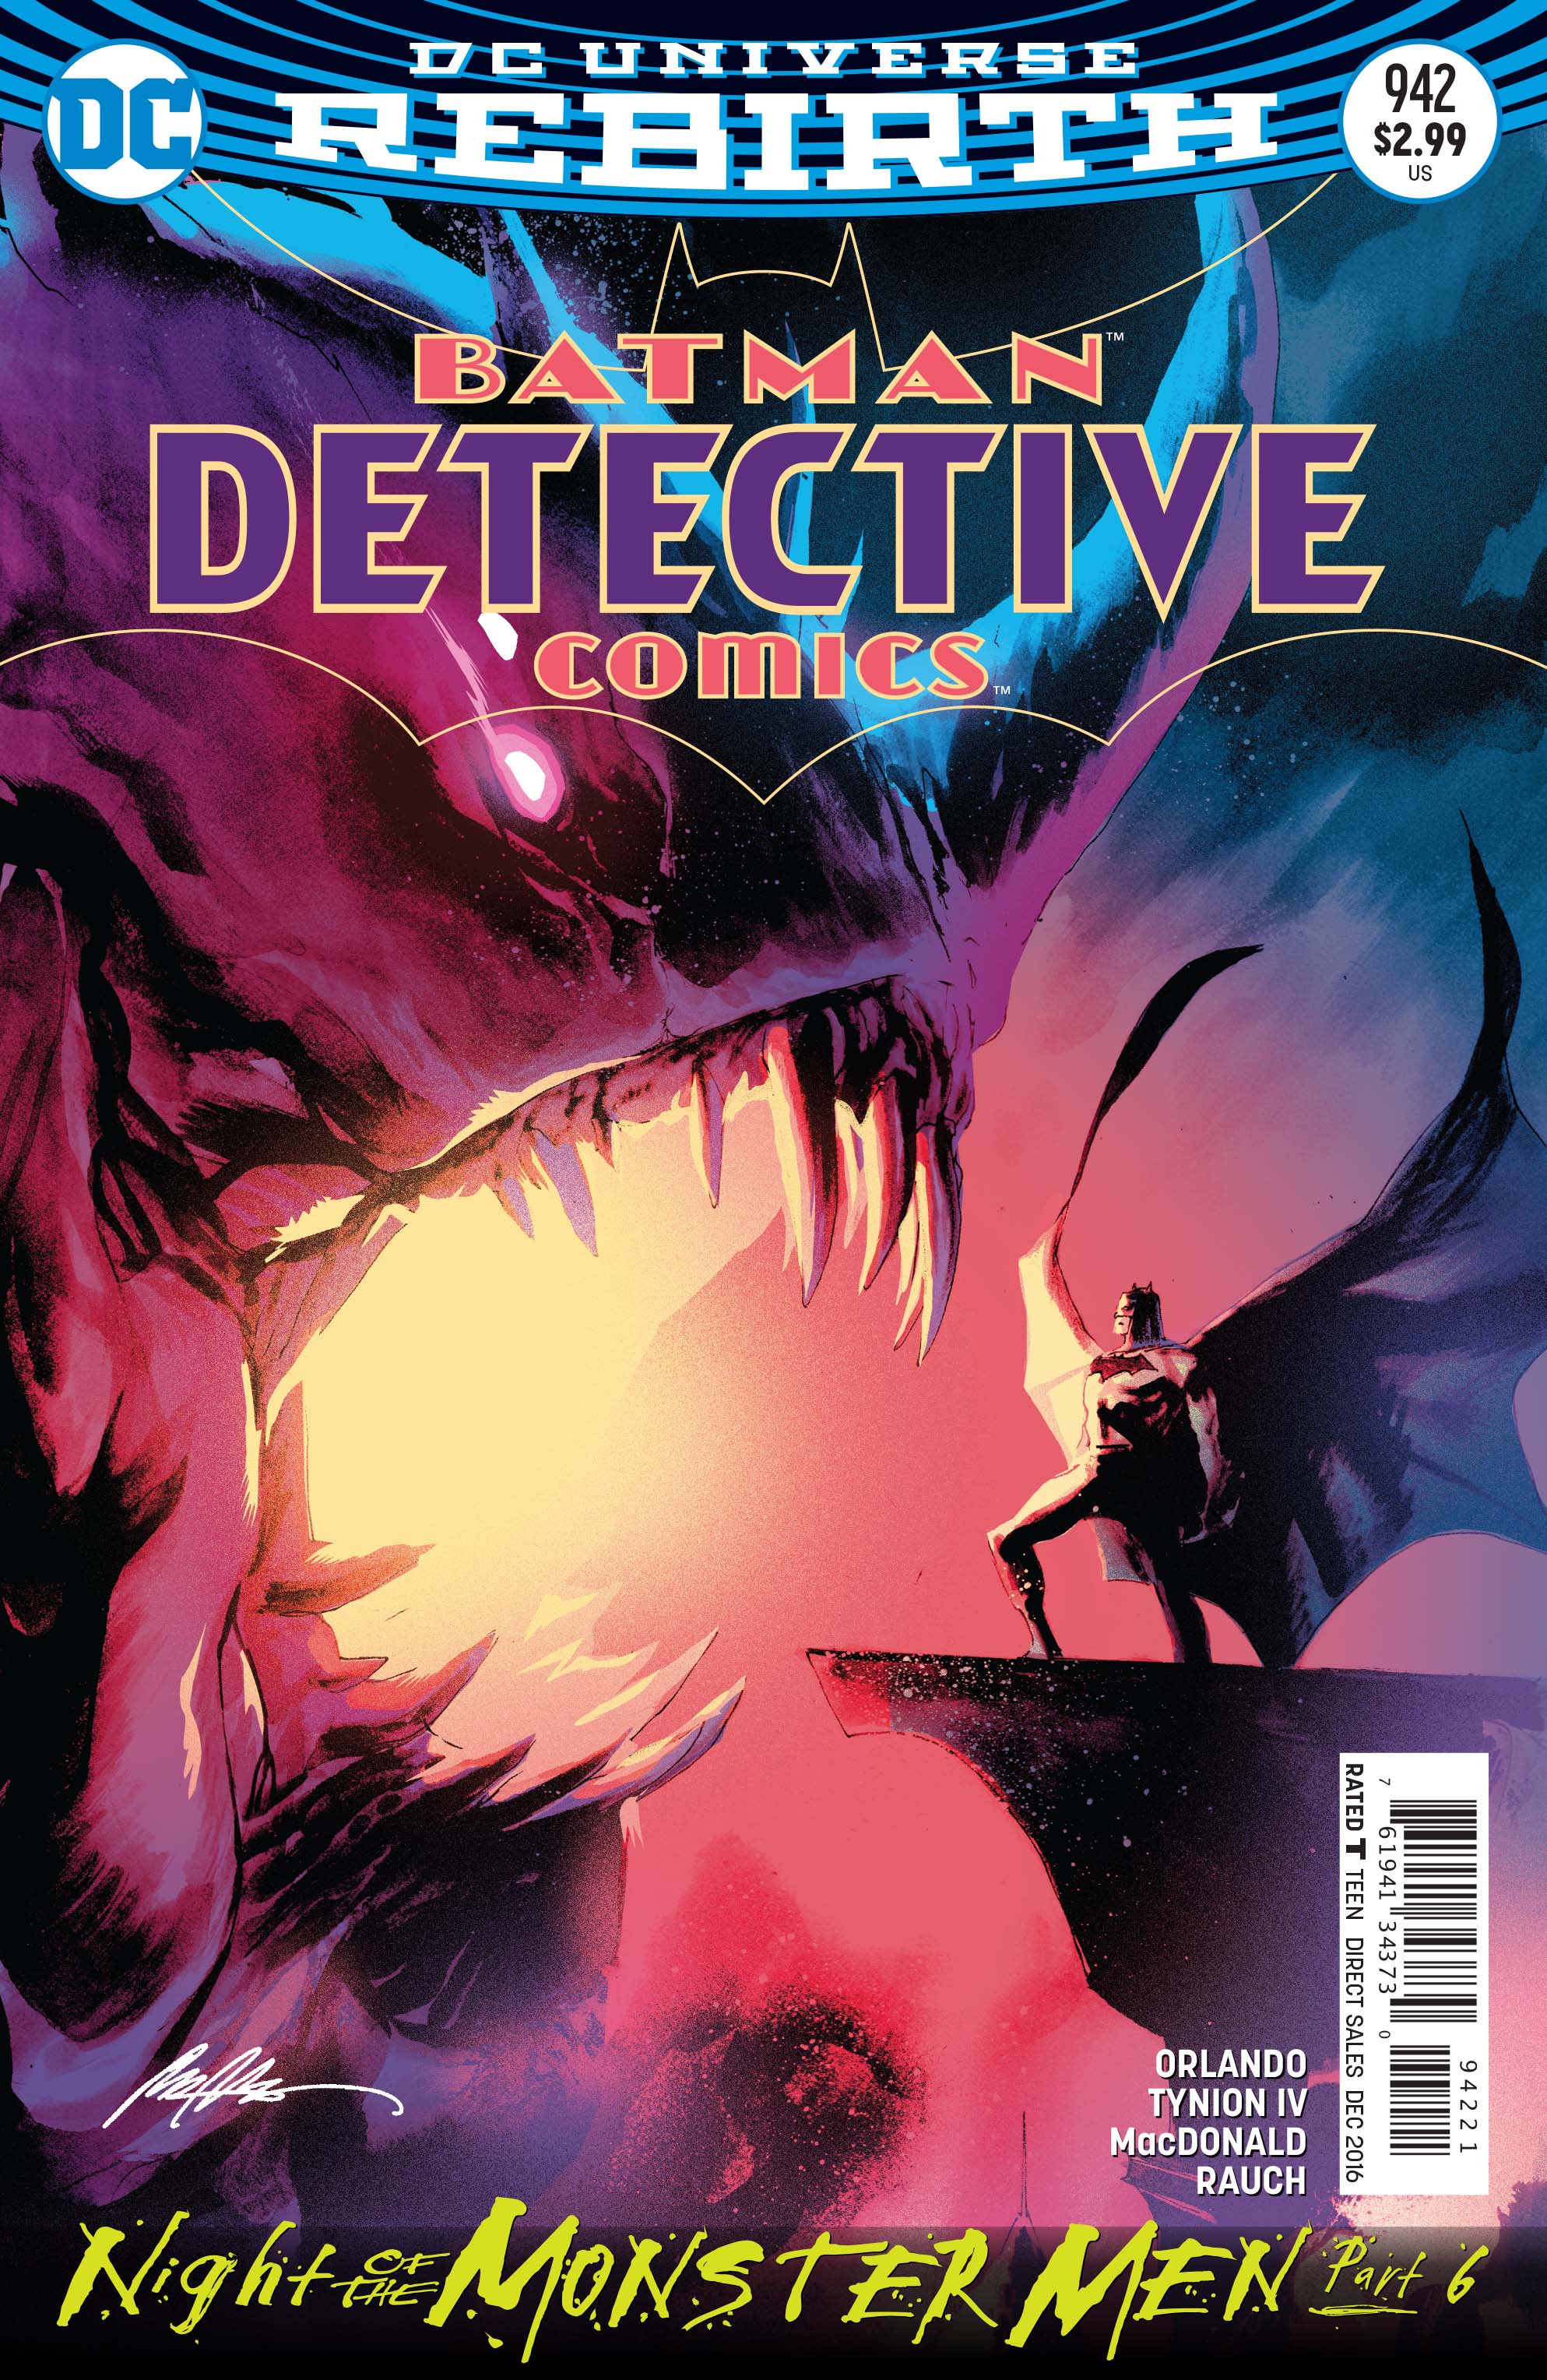 Detective Comics #942 Review